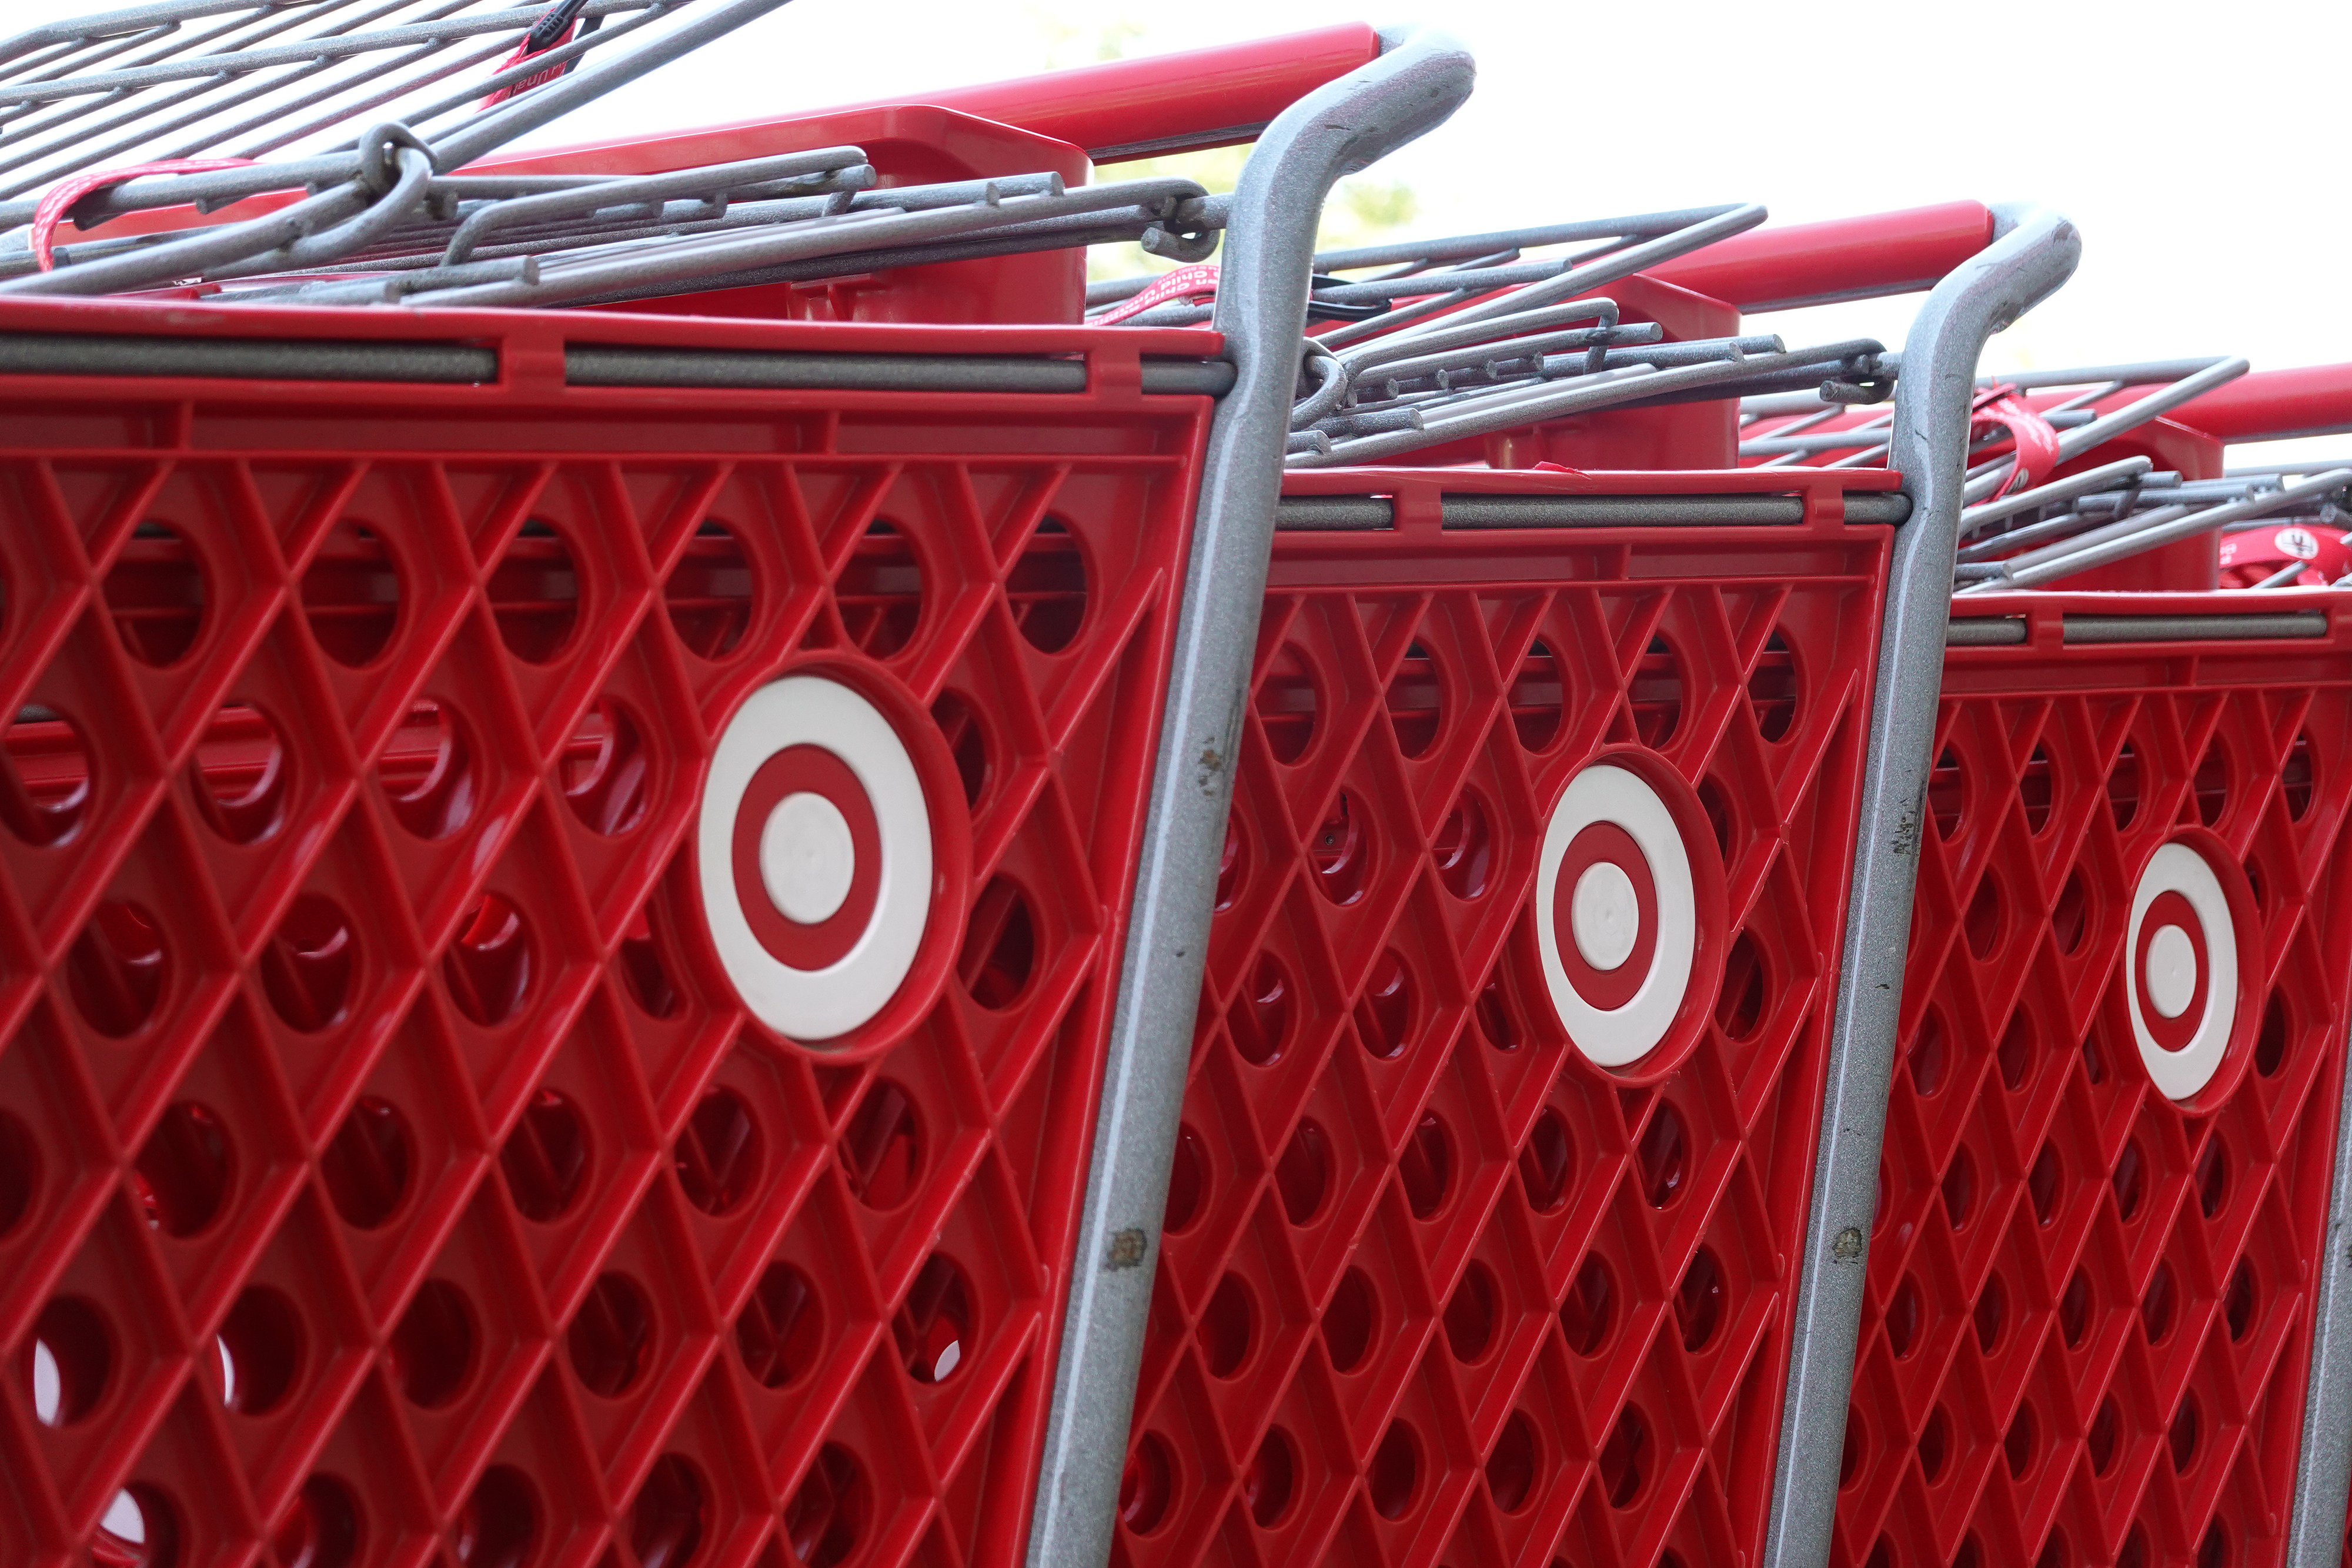 Closeup of Target shopping carts